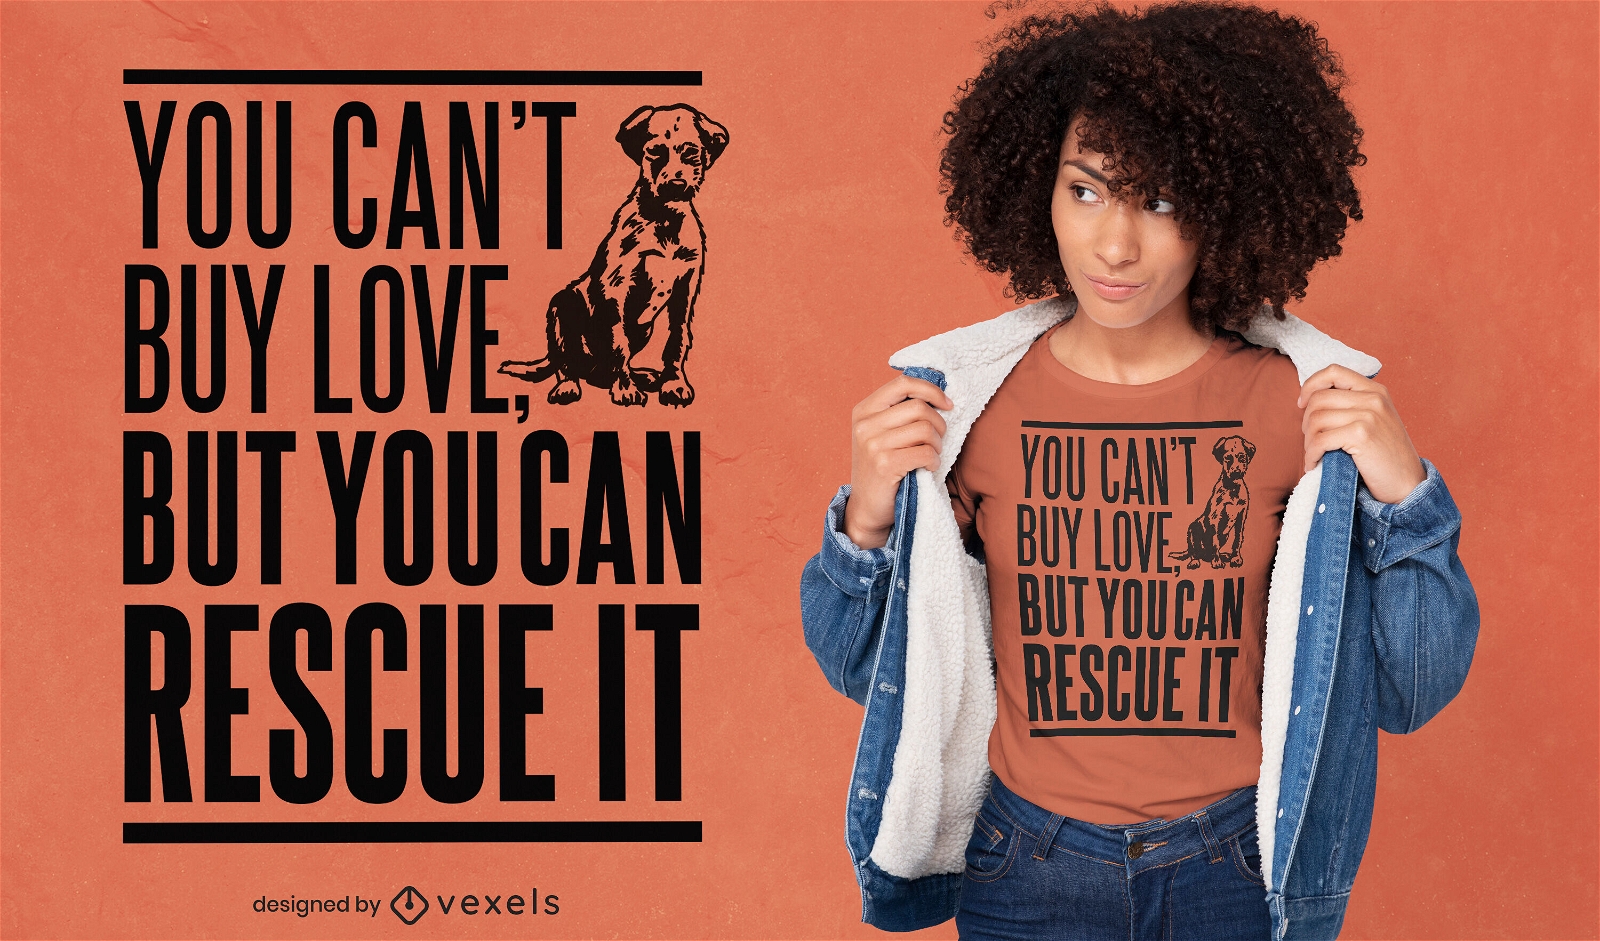 Rescue pets quote t-shirt design